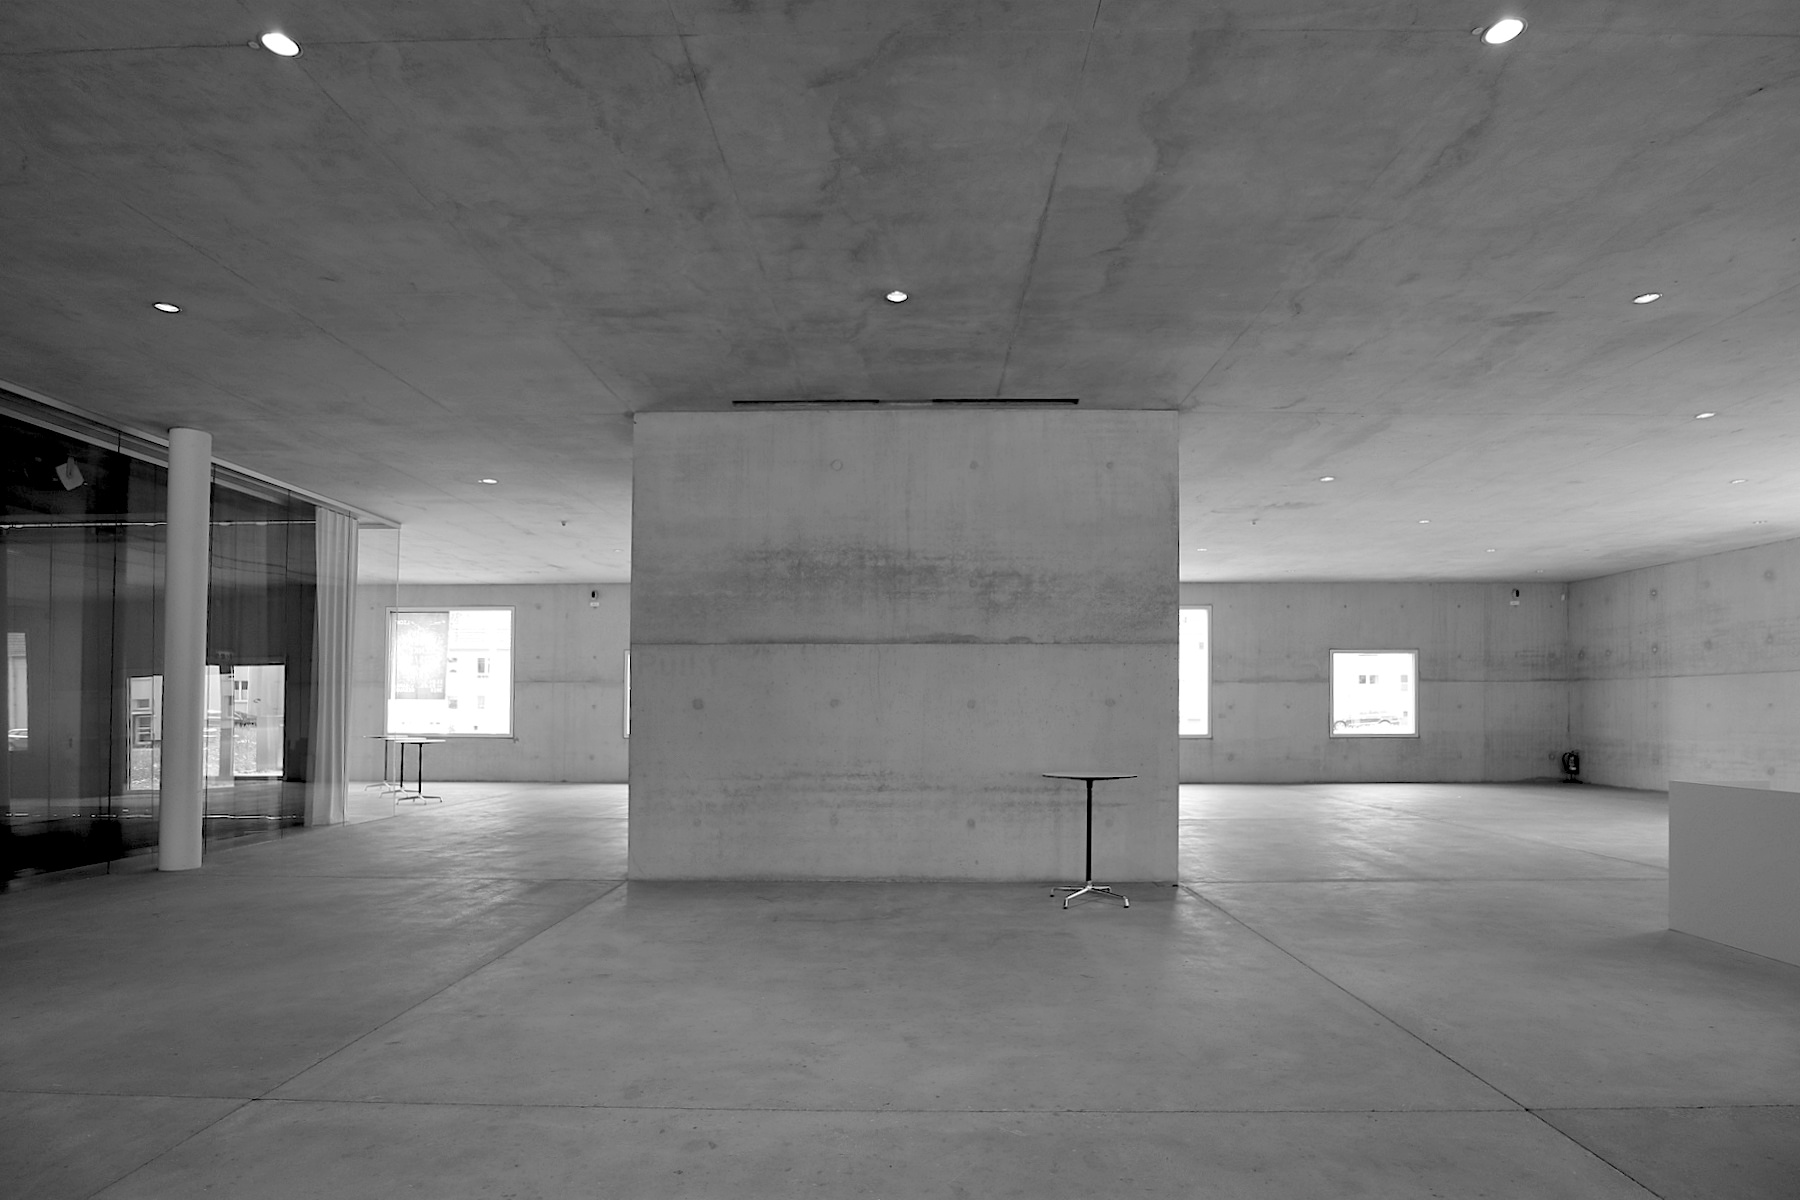 SANAA Gebäude. Kazuyo Sejima and Ryue Nishizawa gründeten ihr Büro 1995 und erhielten 2010 den wichtigsten Architekturpreis der Welt: den Pritzker-Preis. Eine Ehrung auch für ihre Arbeit am 34 Meter hohen Kubus, dessen Gestaltungsprinzipien sich an den Vorstellungen der Modernisten anlehnt.